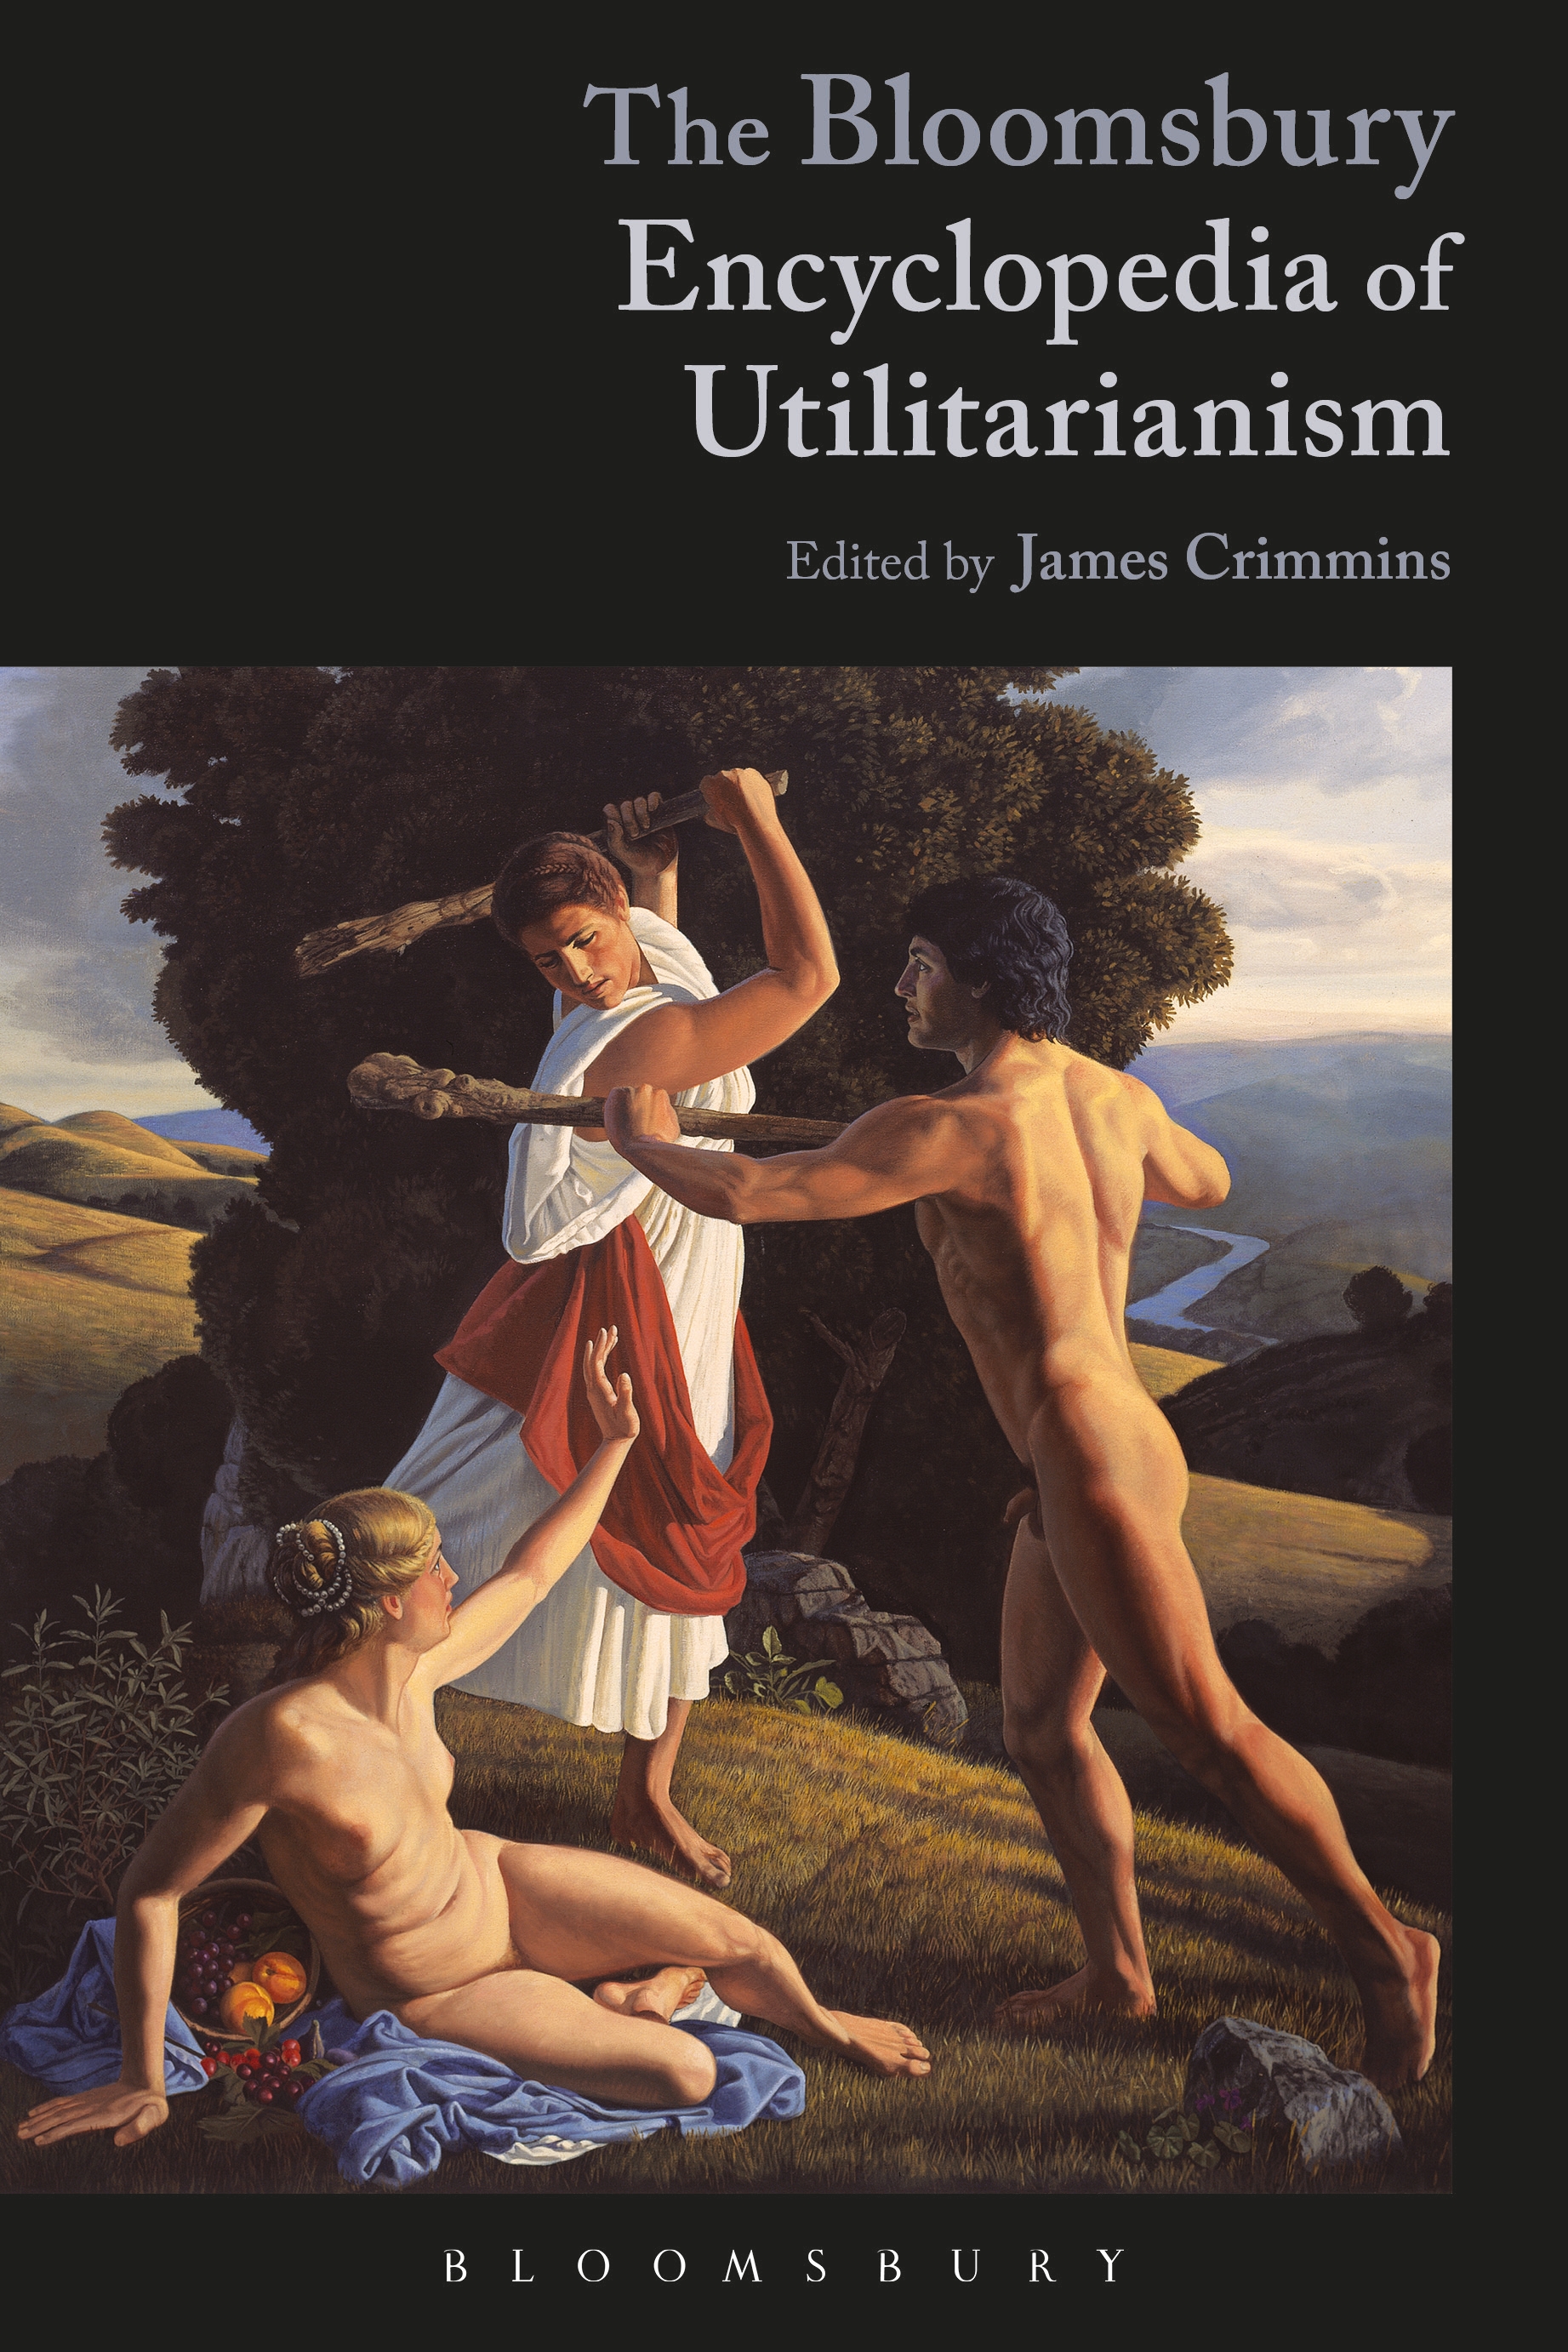 The Bloomsbury Encyclopedia of Utilitarianism - 50-99.99